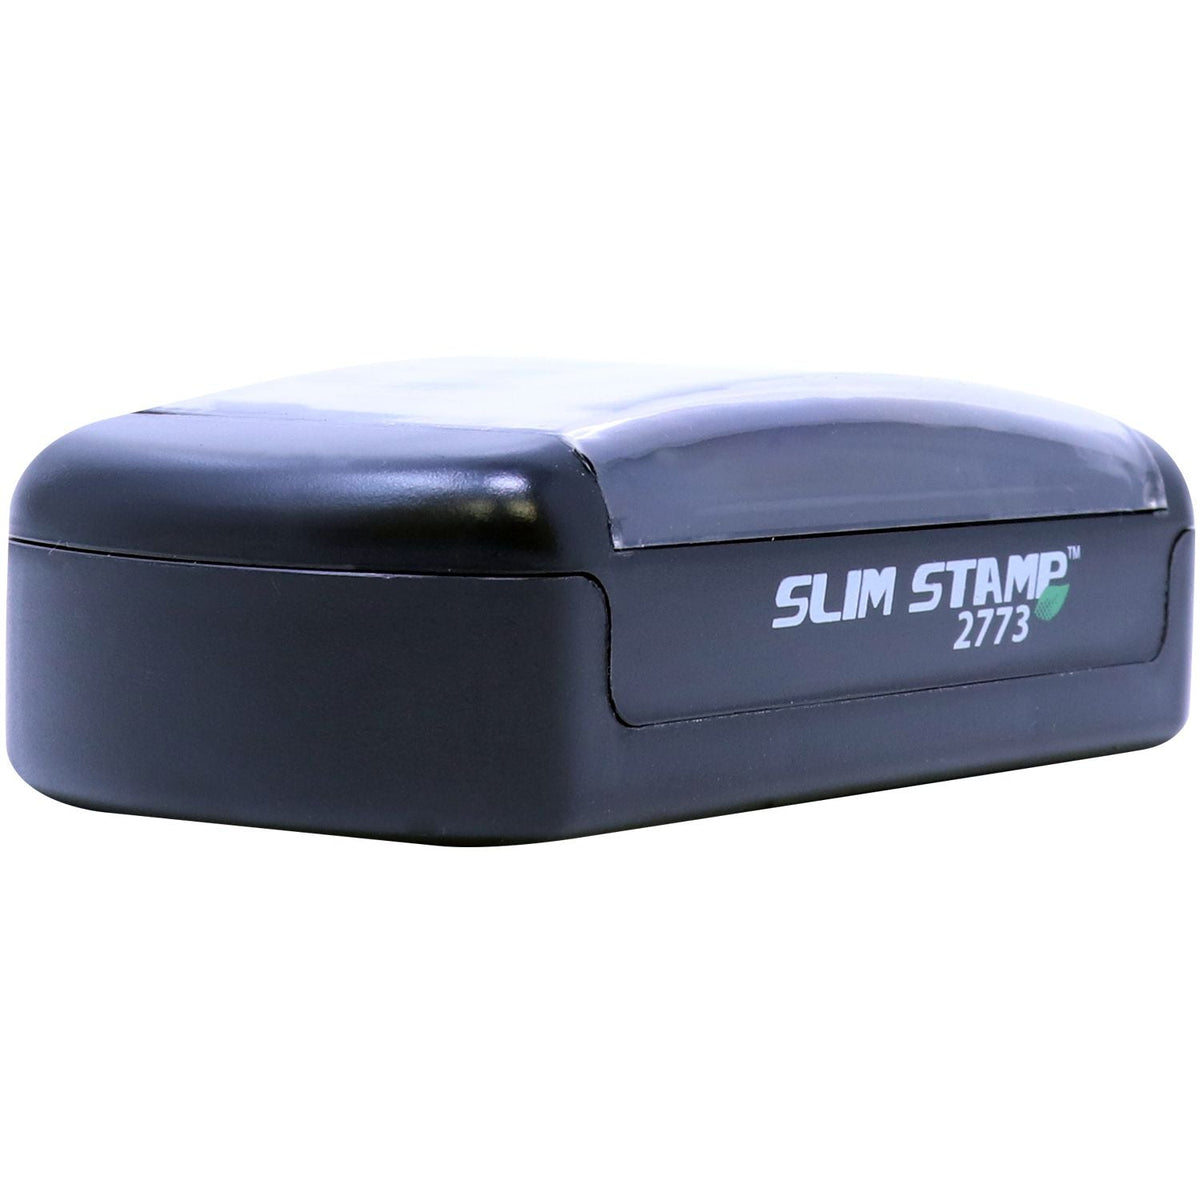 Slimstamp Custom Stamp 2773 Front Side